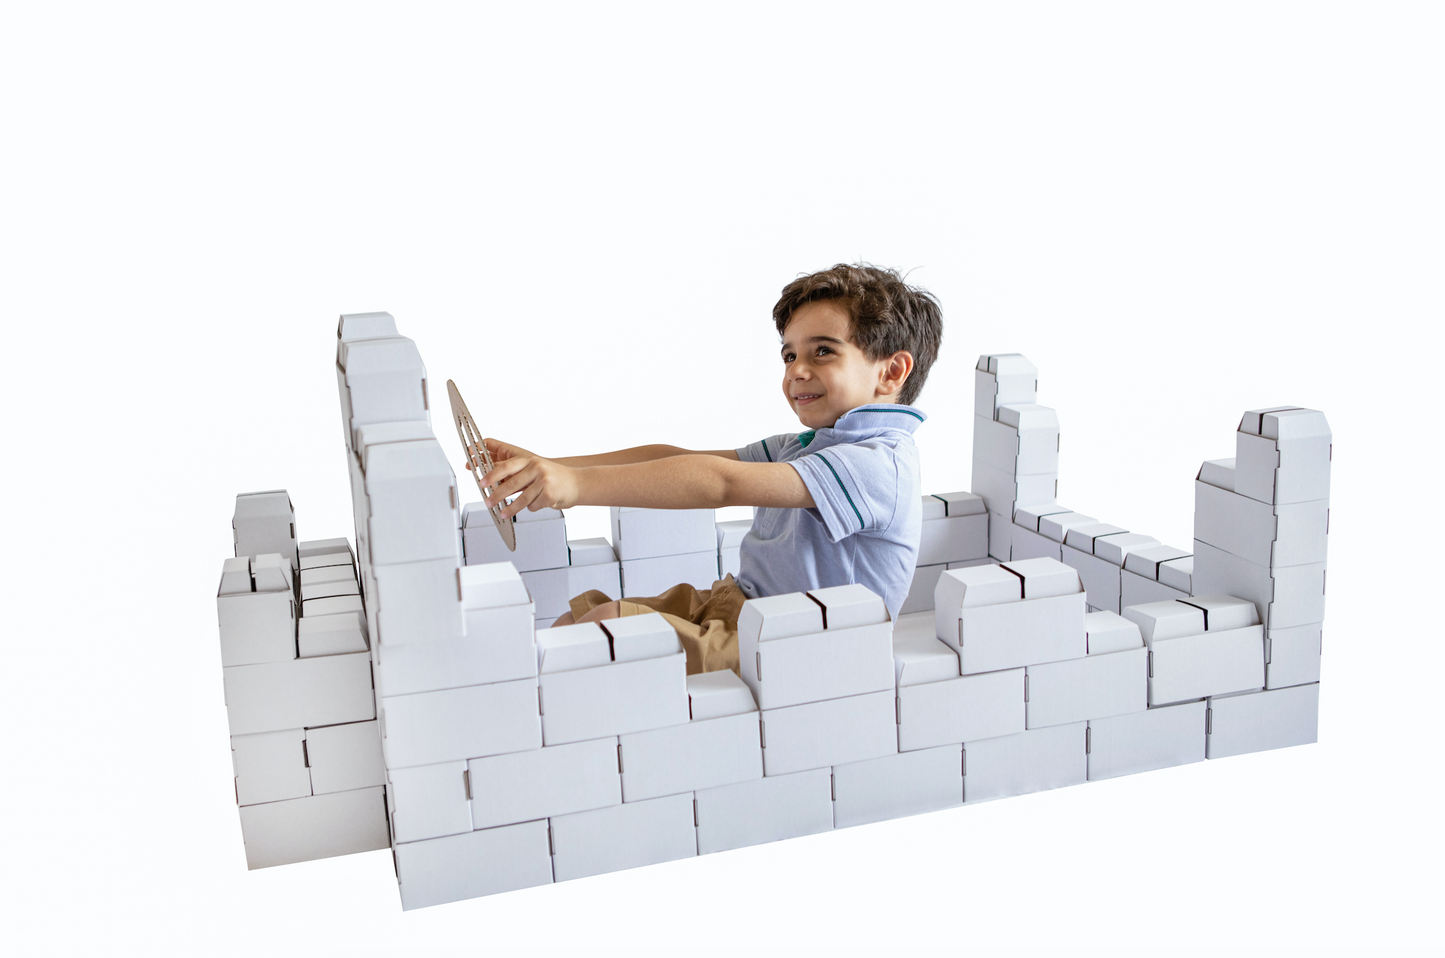 Rikbits cardboard interlocking bricks (100 Pieces) – White